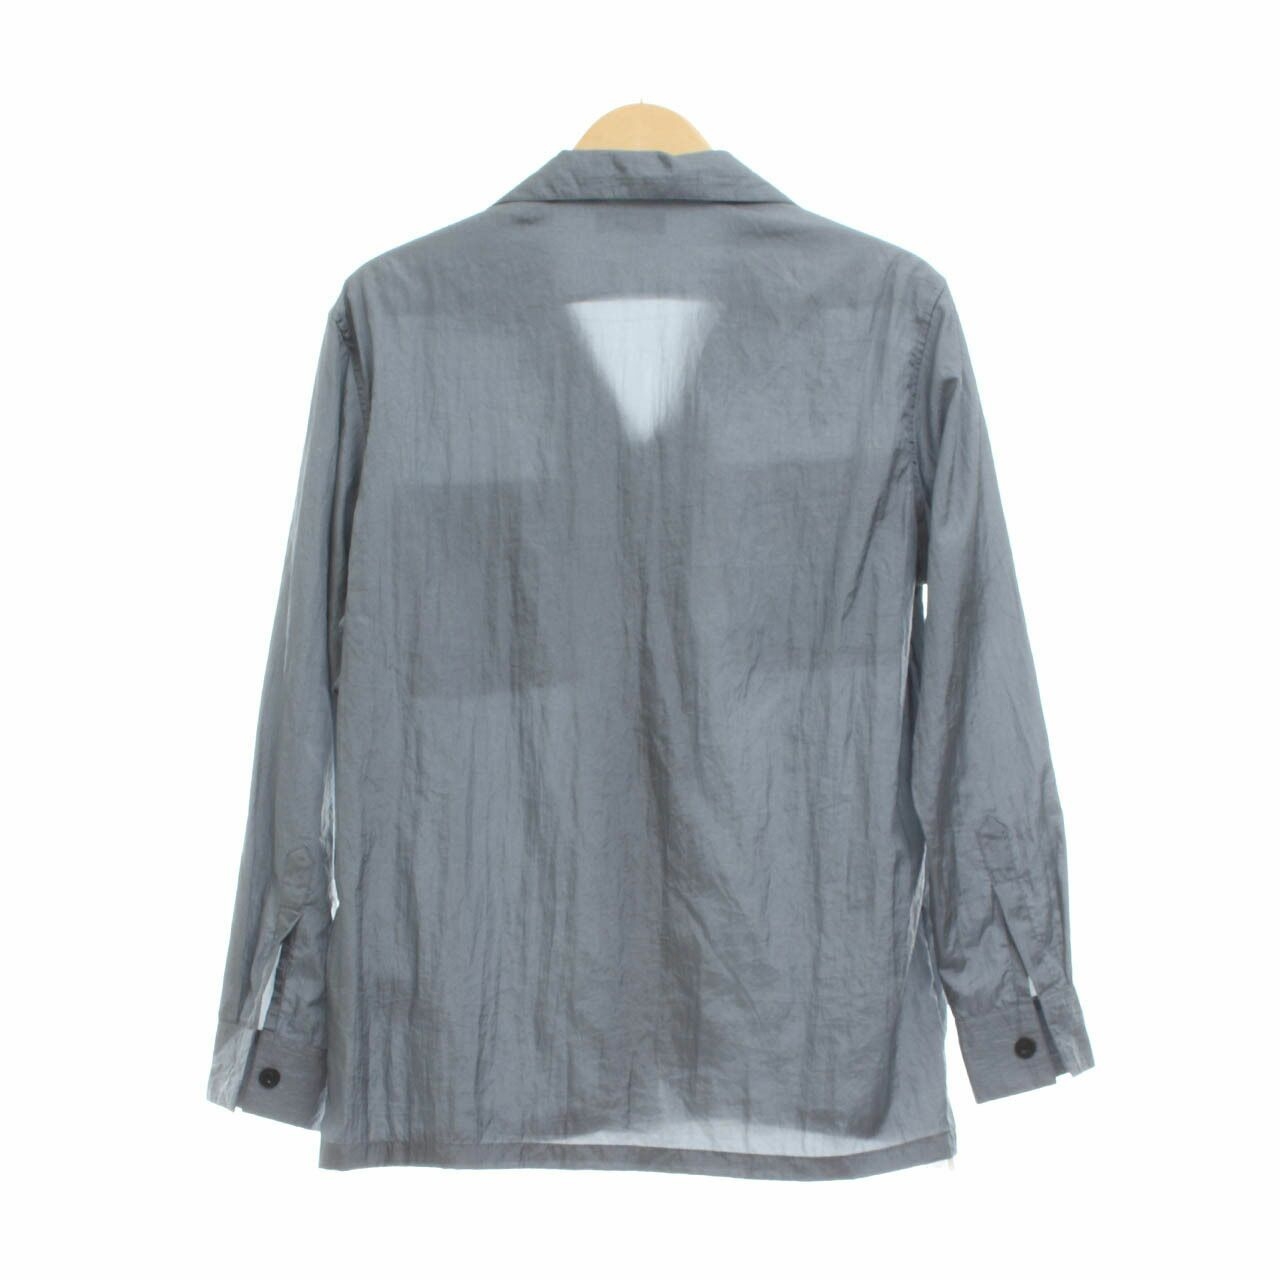 Taka Grey Shirt